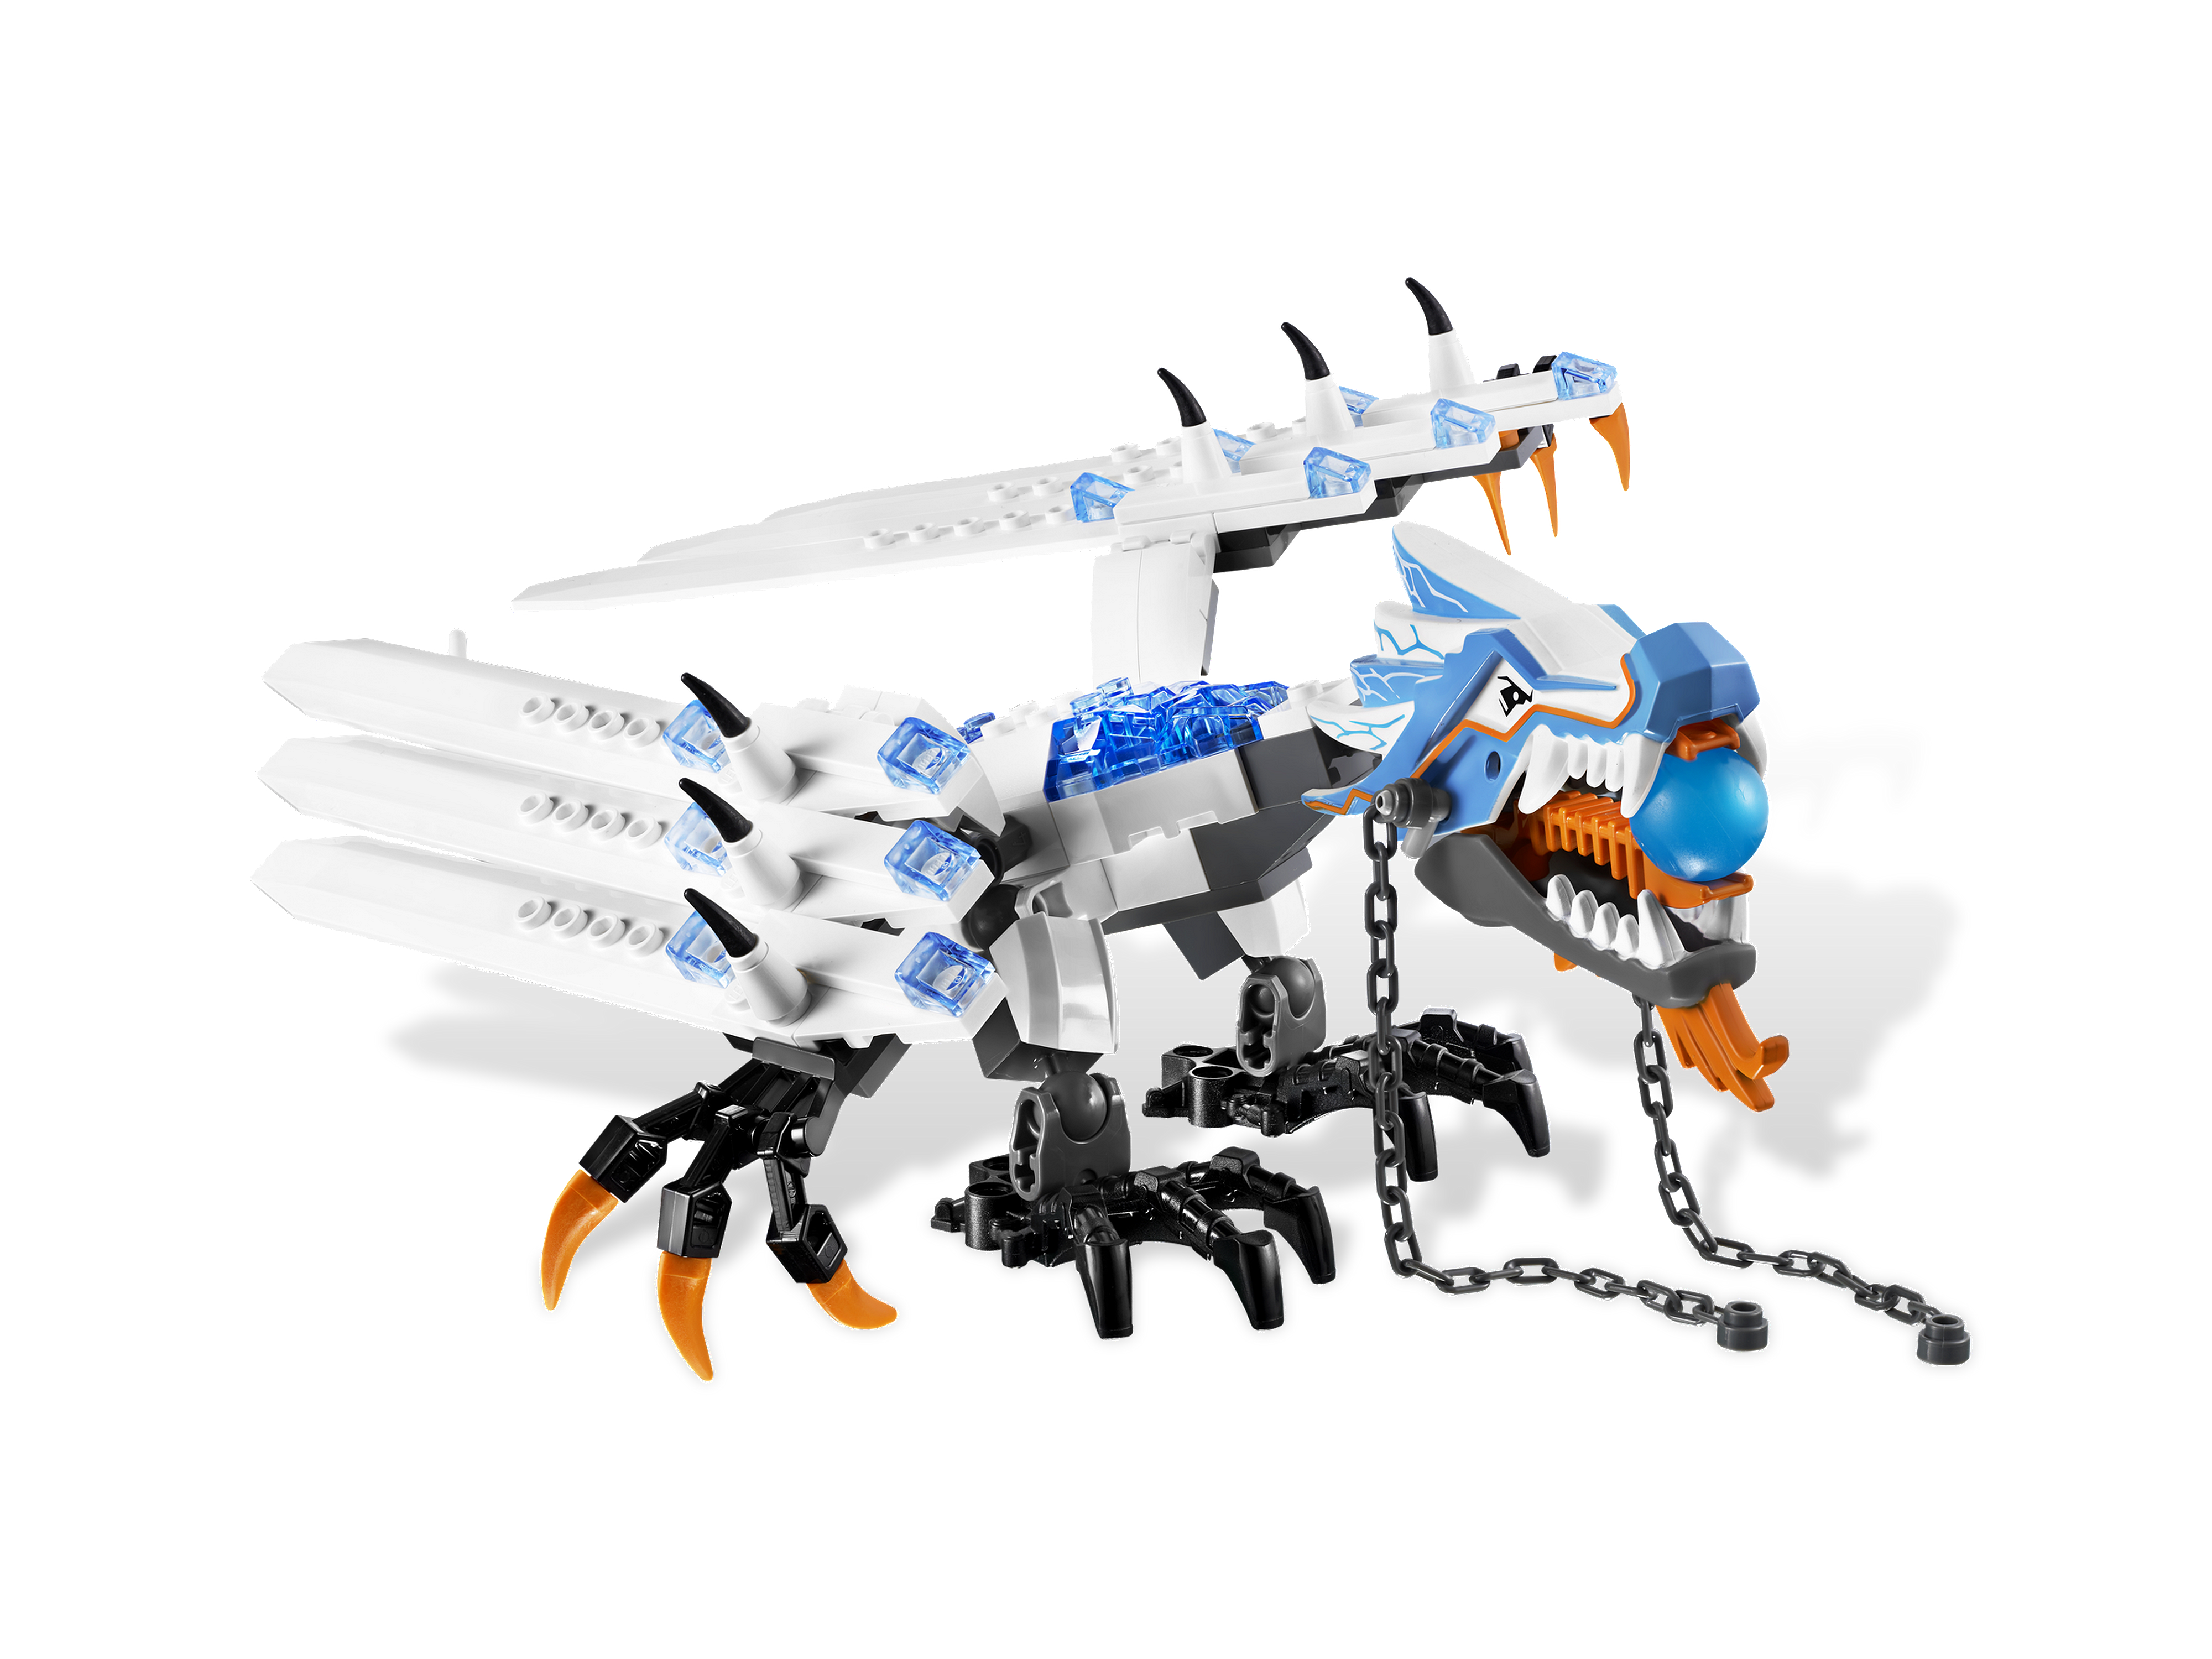 lego ninjago ice dragon